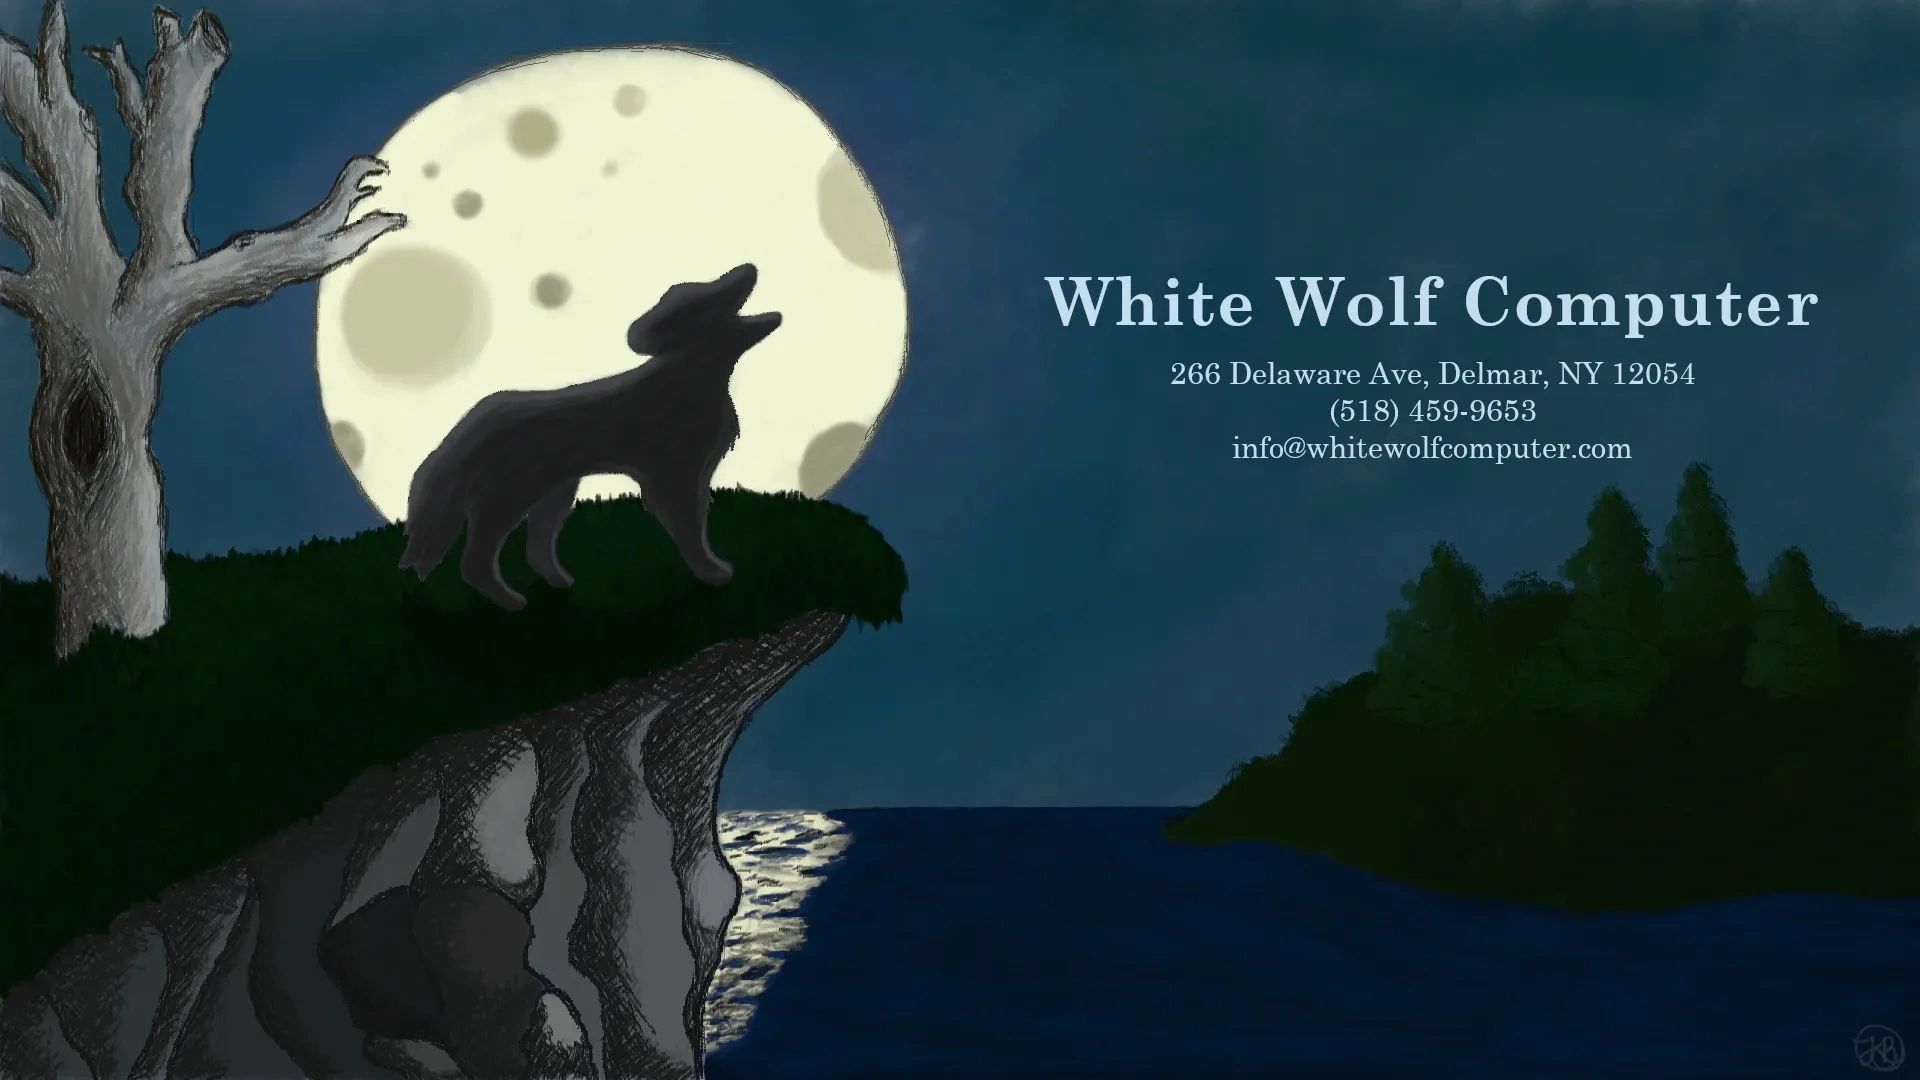 White Wolf Computer, LLC